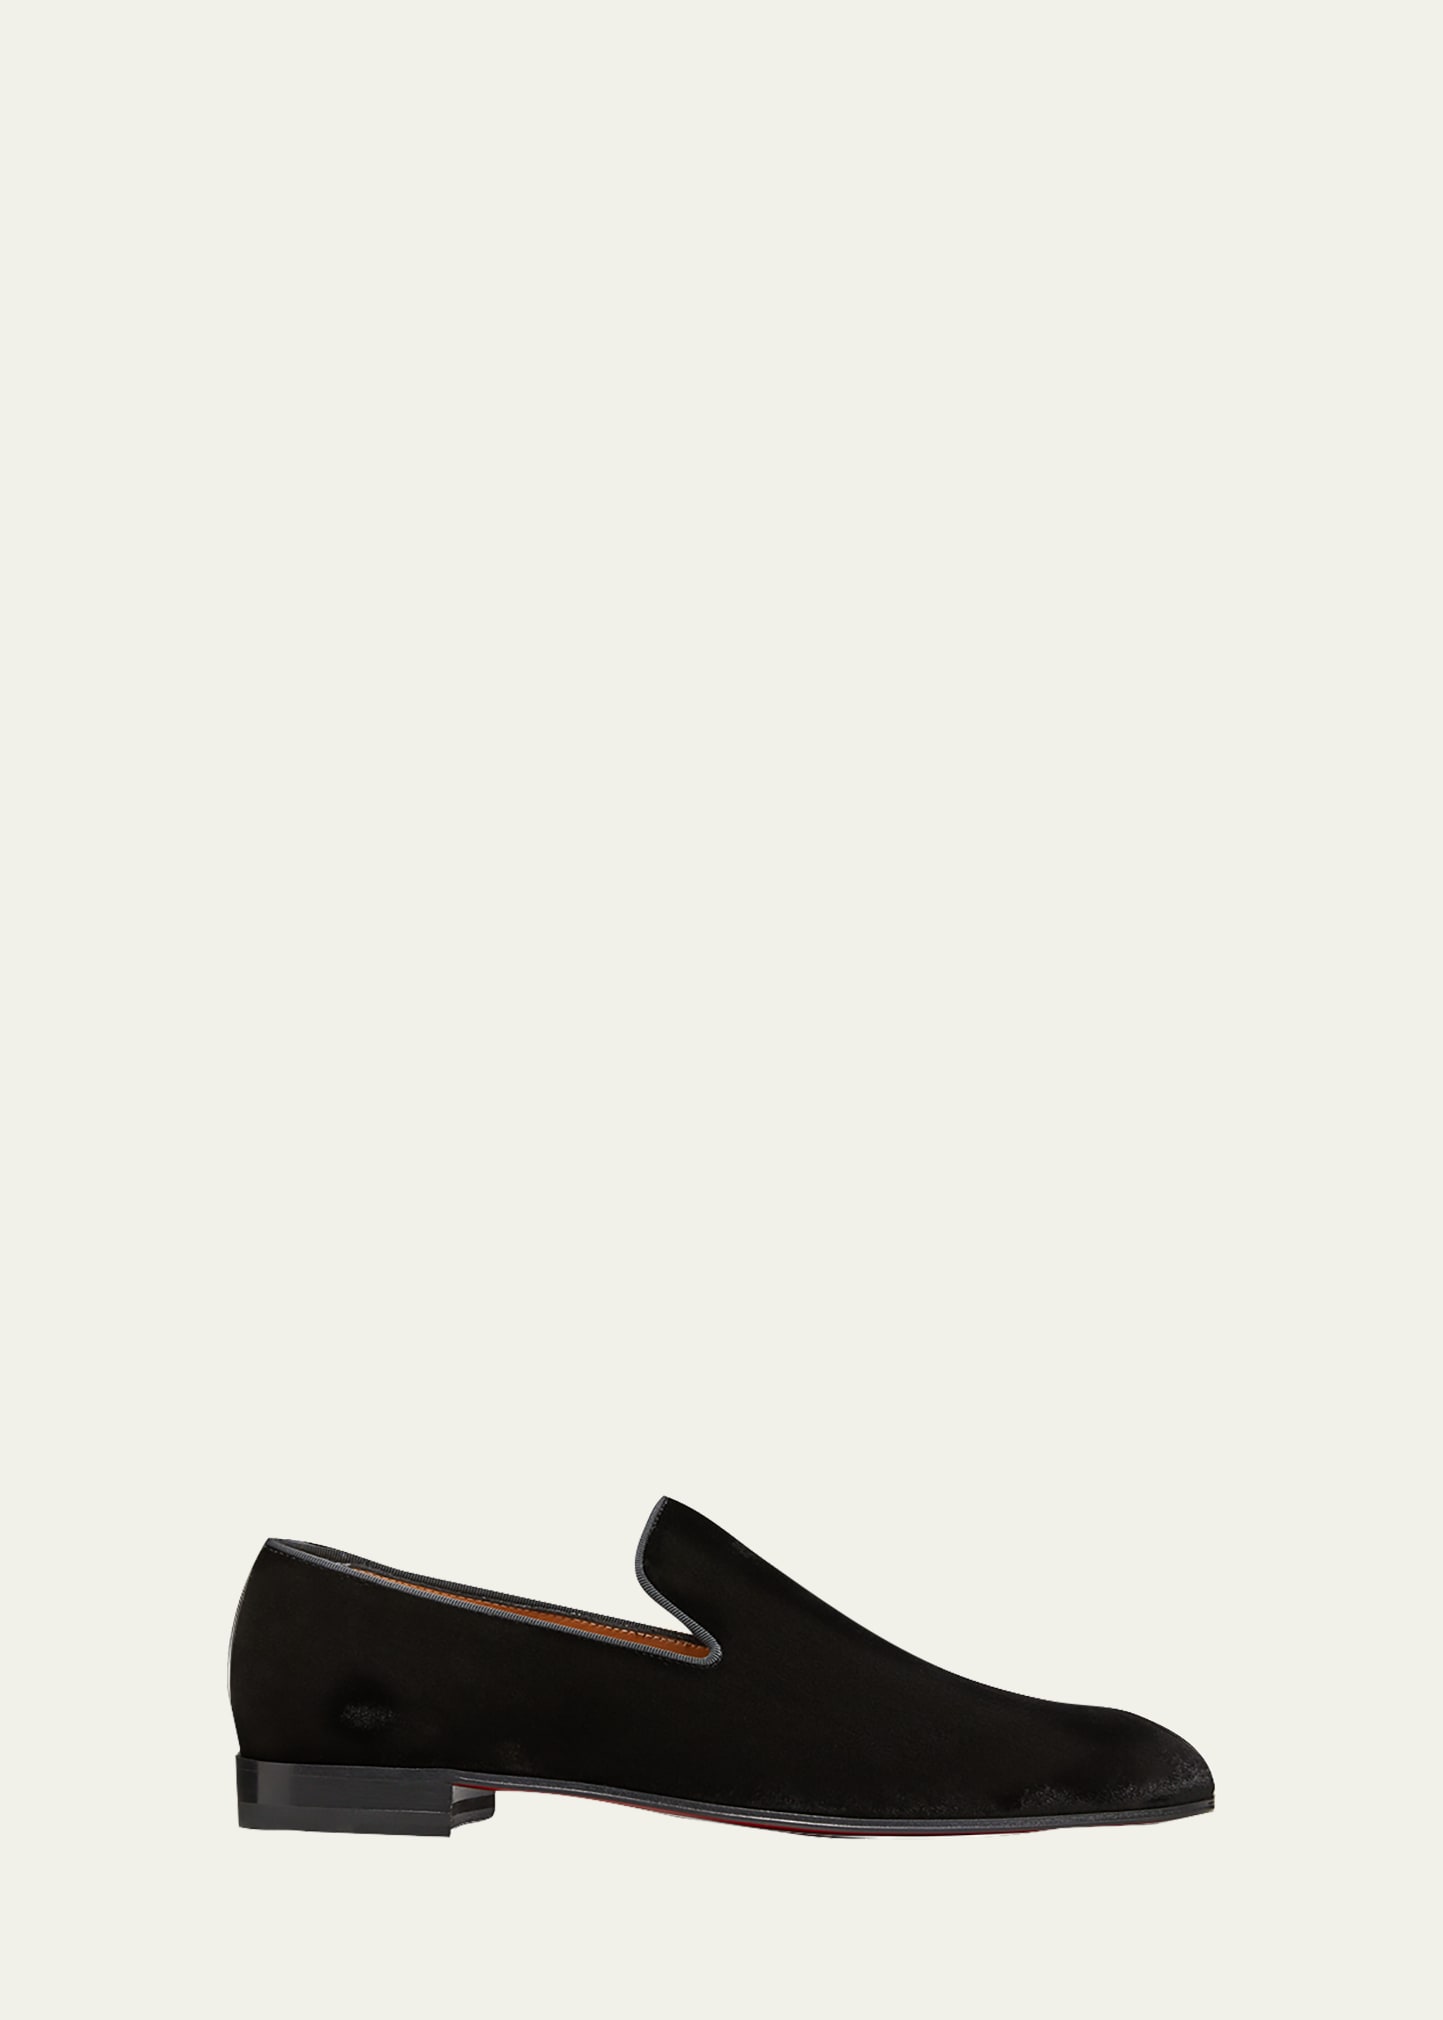 DANDELION SPIKE 000 BLACK/DORADO Velvet - Shoes - Men - Christian Louboutin